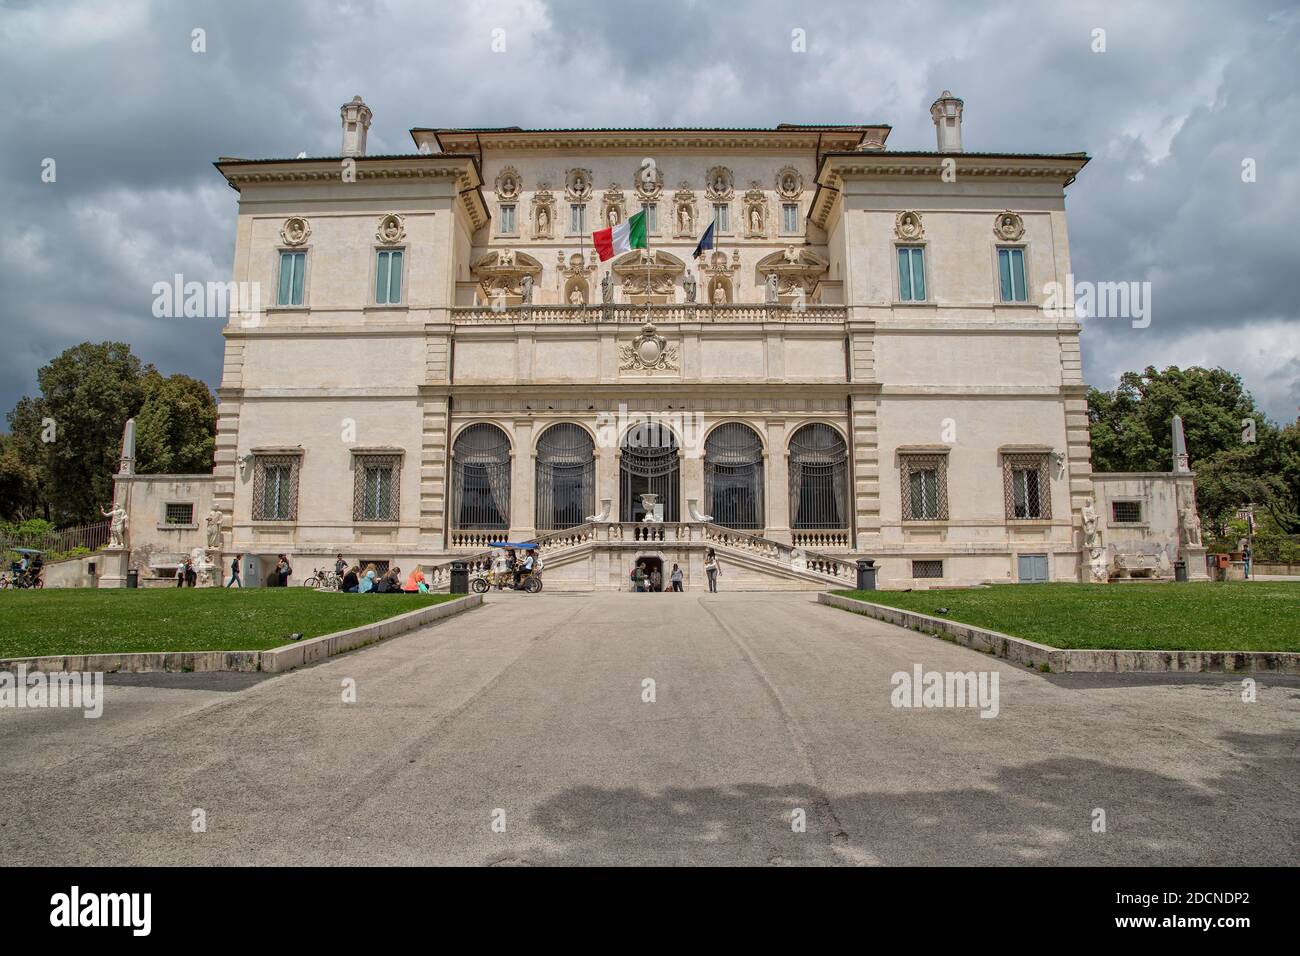 Roma, Italia - 15 de mayo de 2016: Los turistas visitan la exposición en la Galería Borghese y el Museo en el Parque Villa Borghese en la ciudad de Roma. Foto de stock